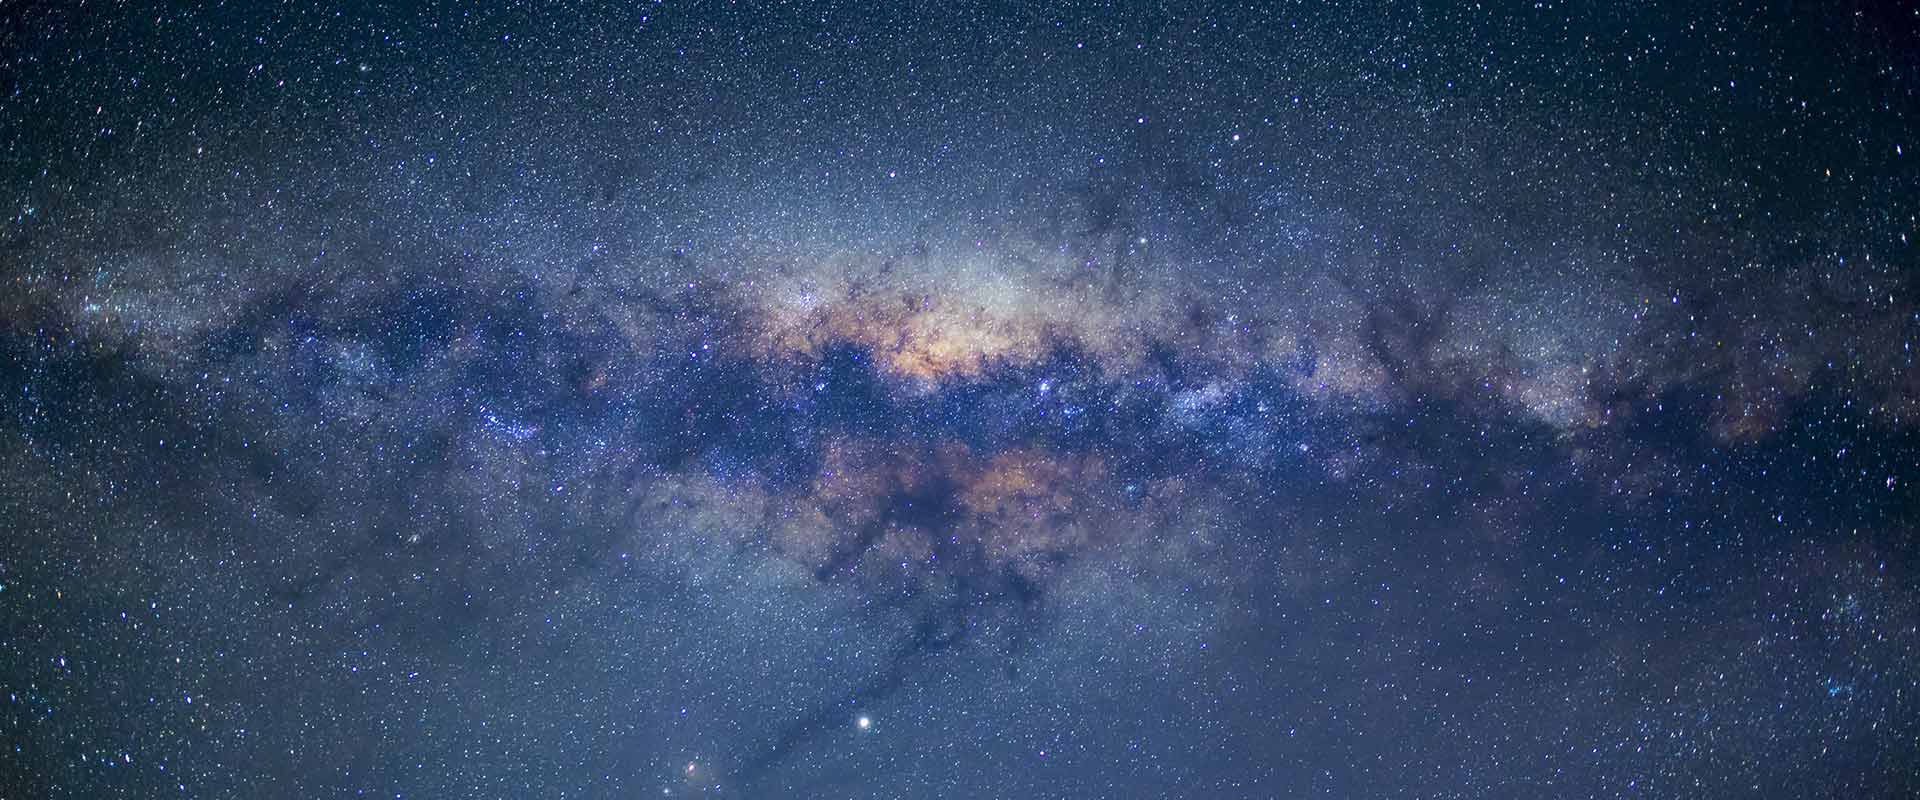 Milky Way over Willunga, Fleurieu Peninsula, source @dave_parky  (via IG)